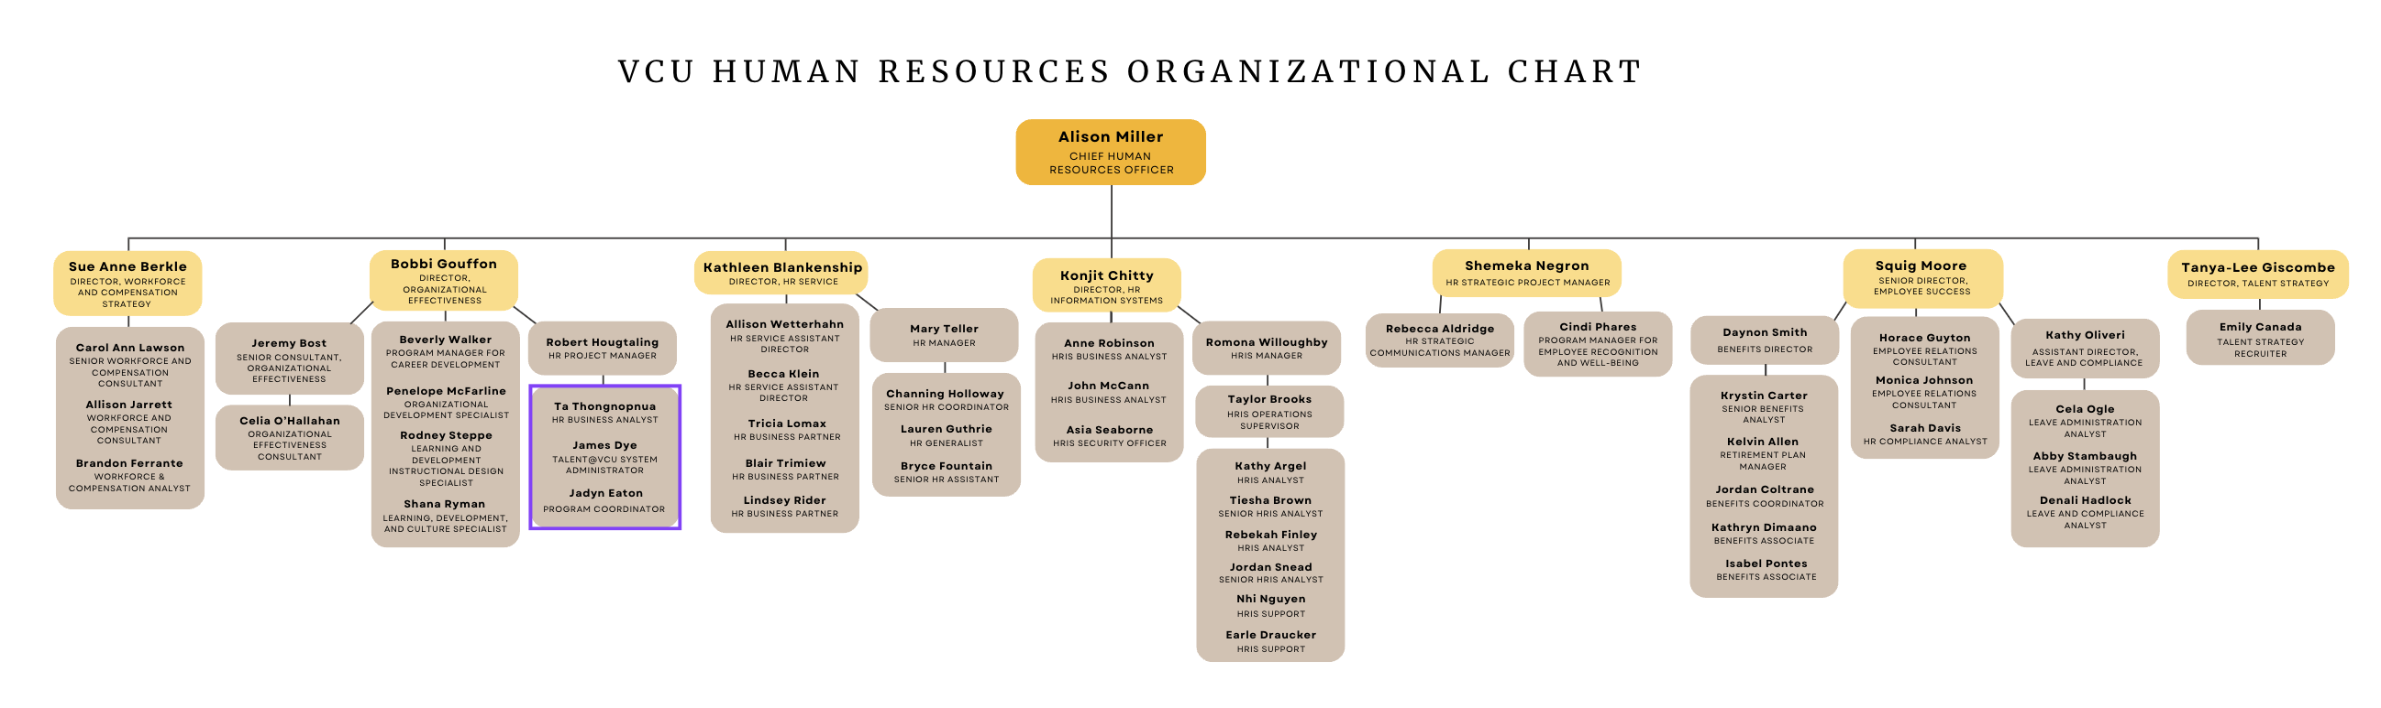 VCU HR Organizational Chart